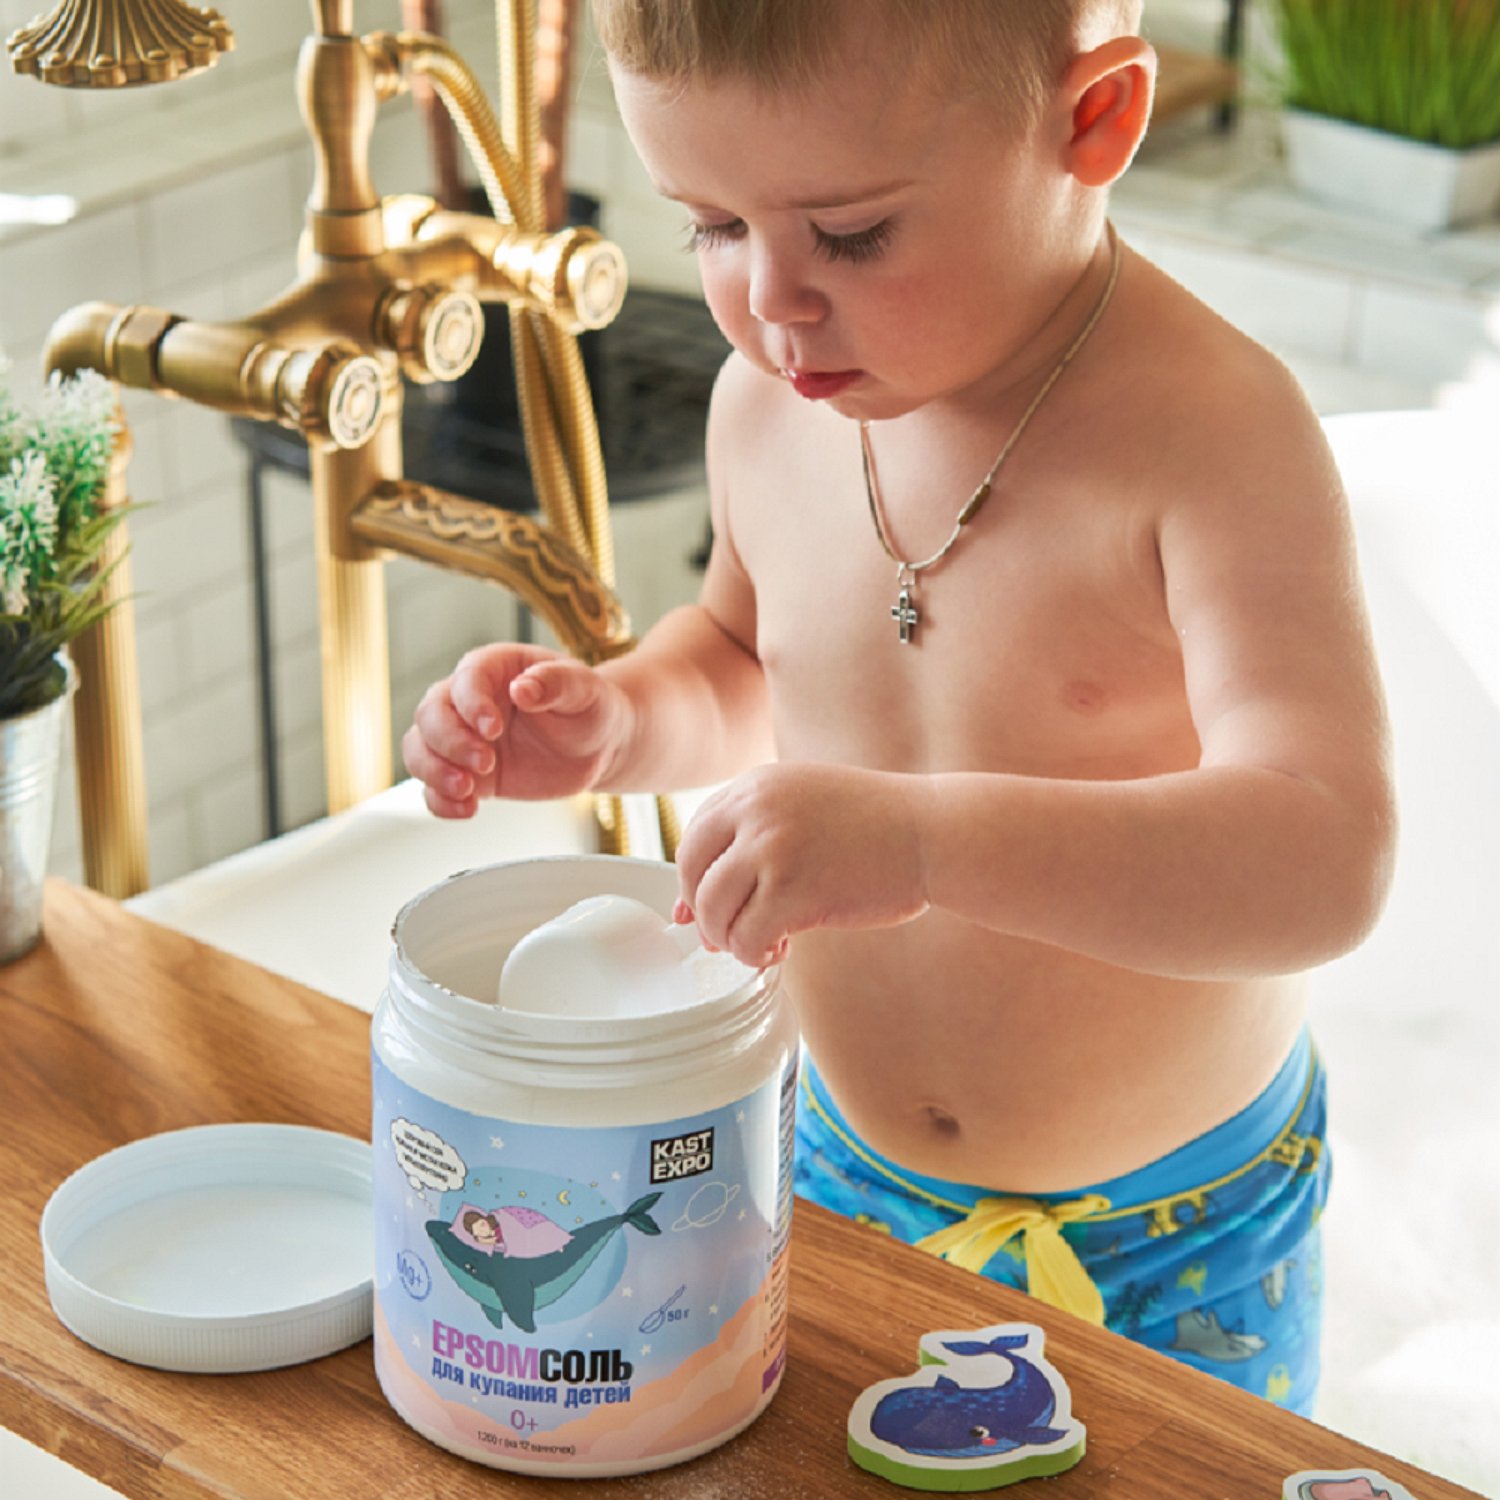 Соль для ванн KAST-EXPO магниевая детская Epsom - фото 8